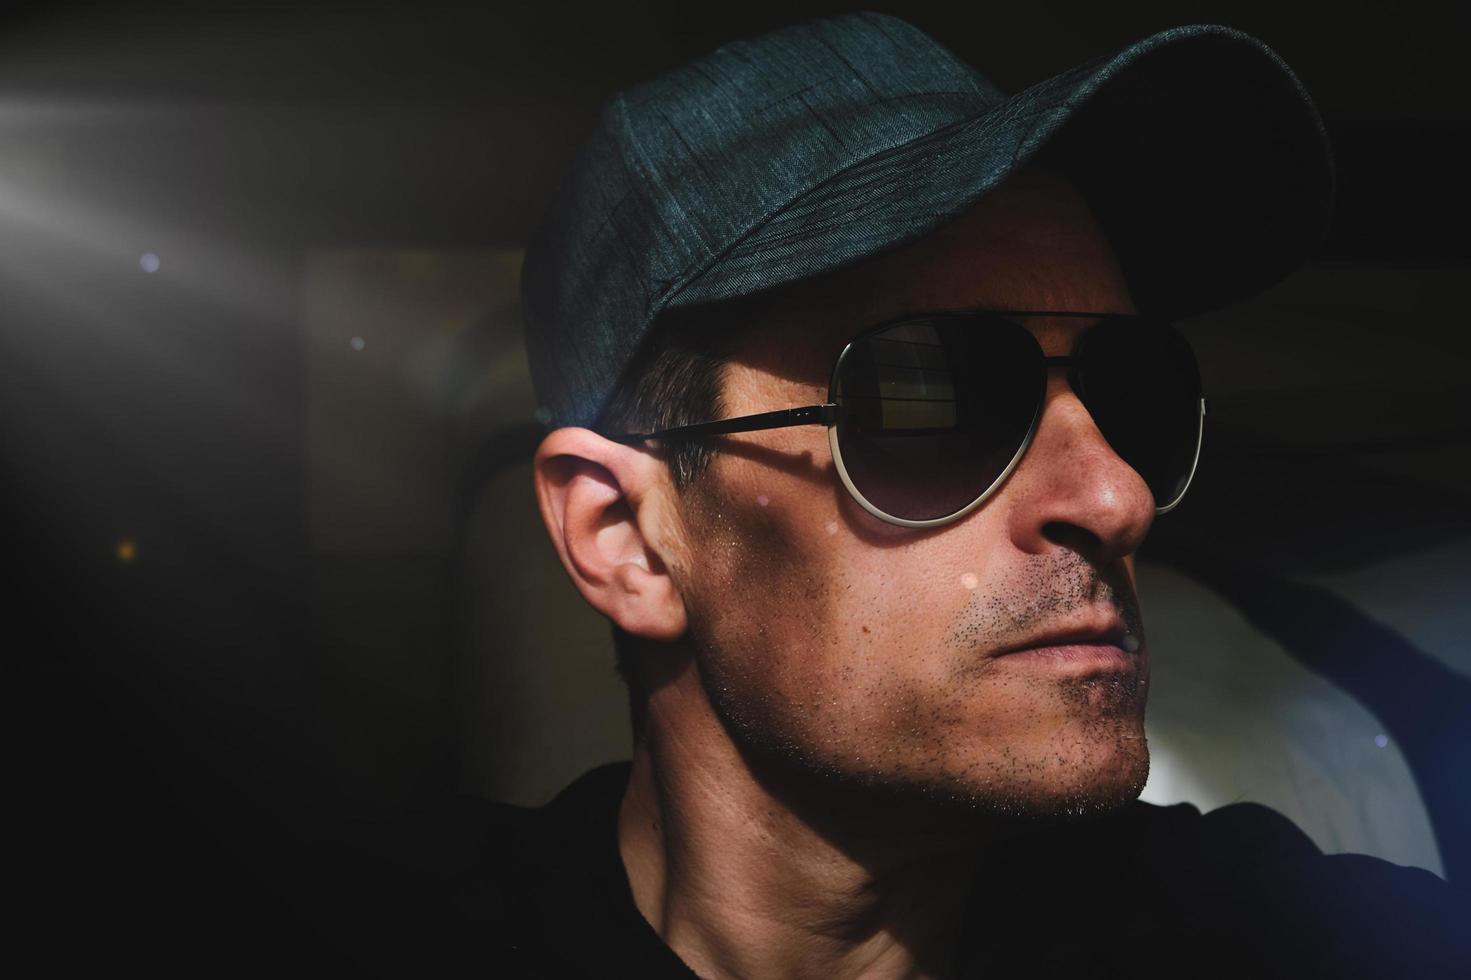 Mann mit Mütze und Sonnenbrille, der ein Selfie im Schatten macht foto